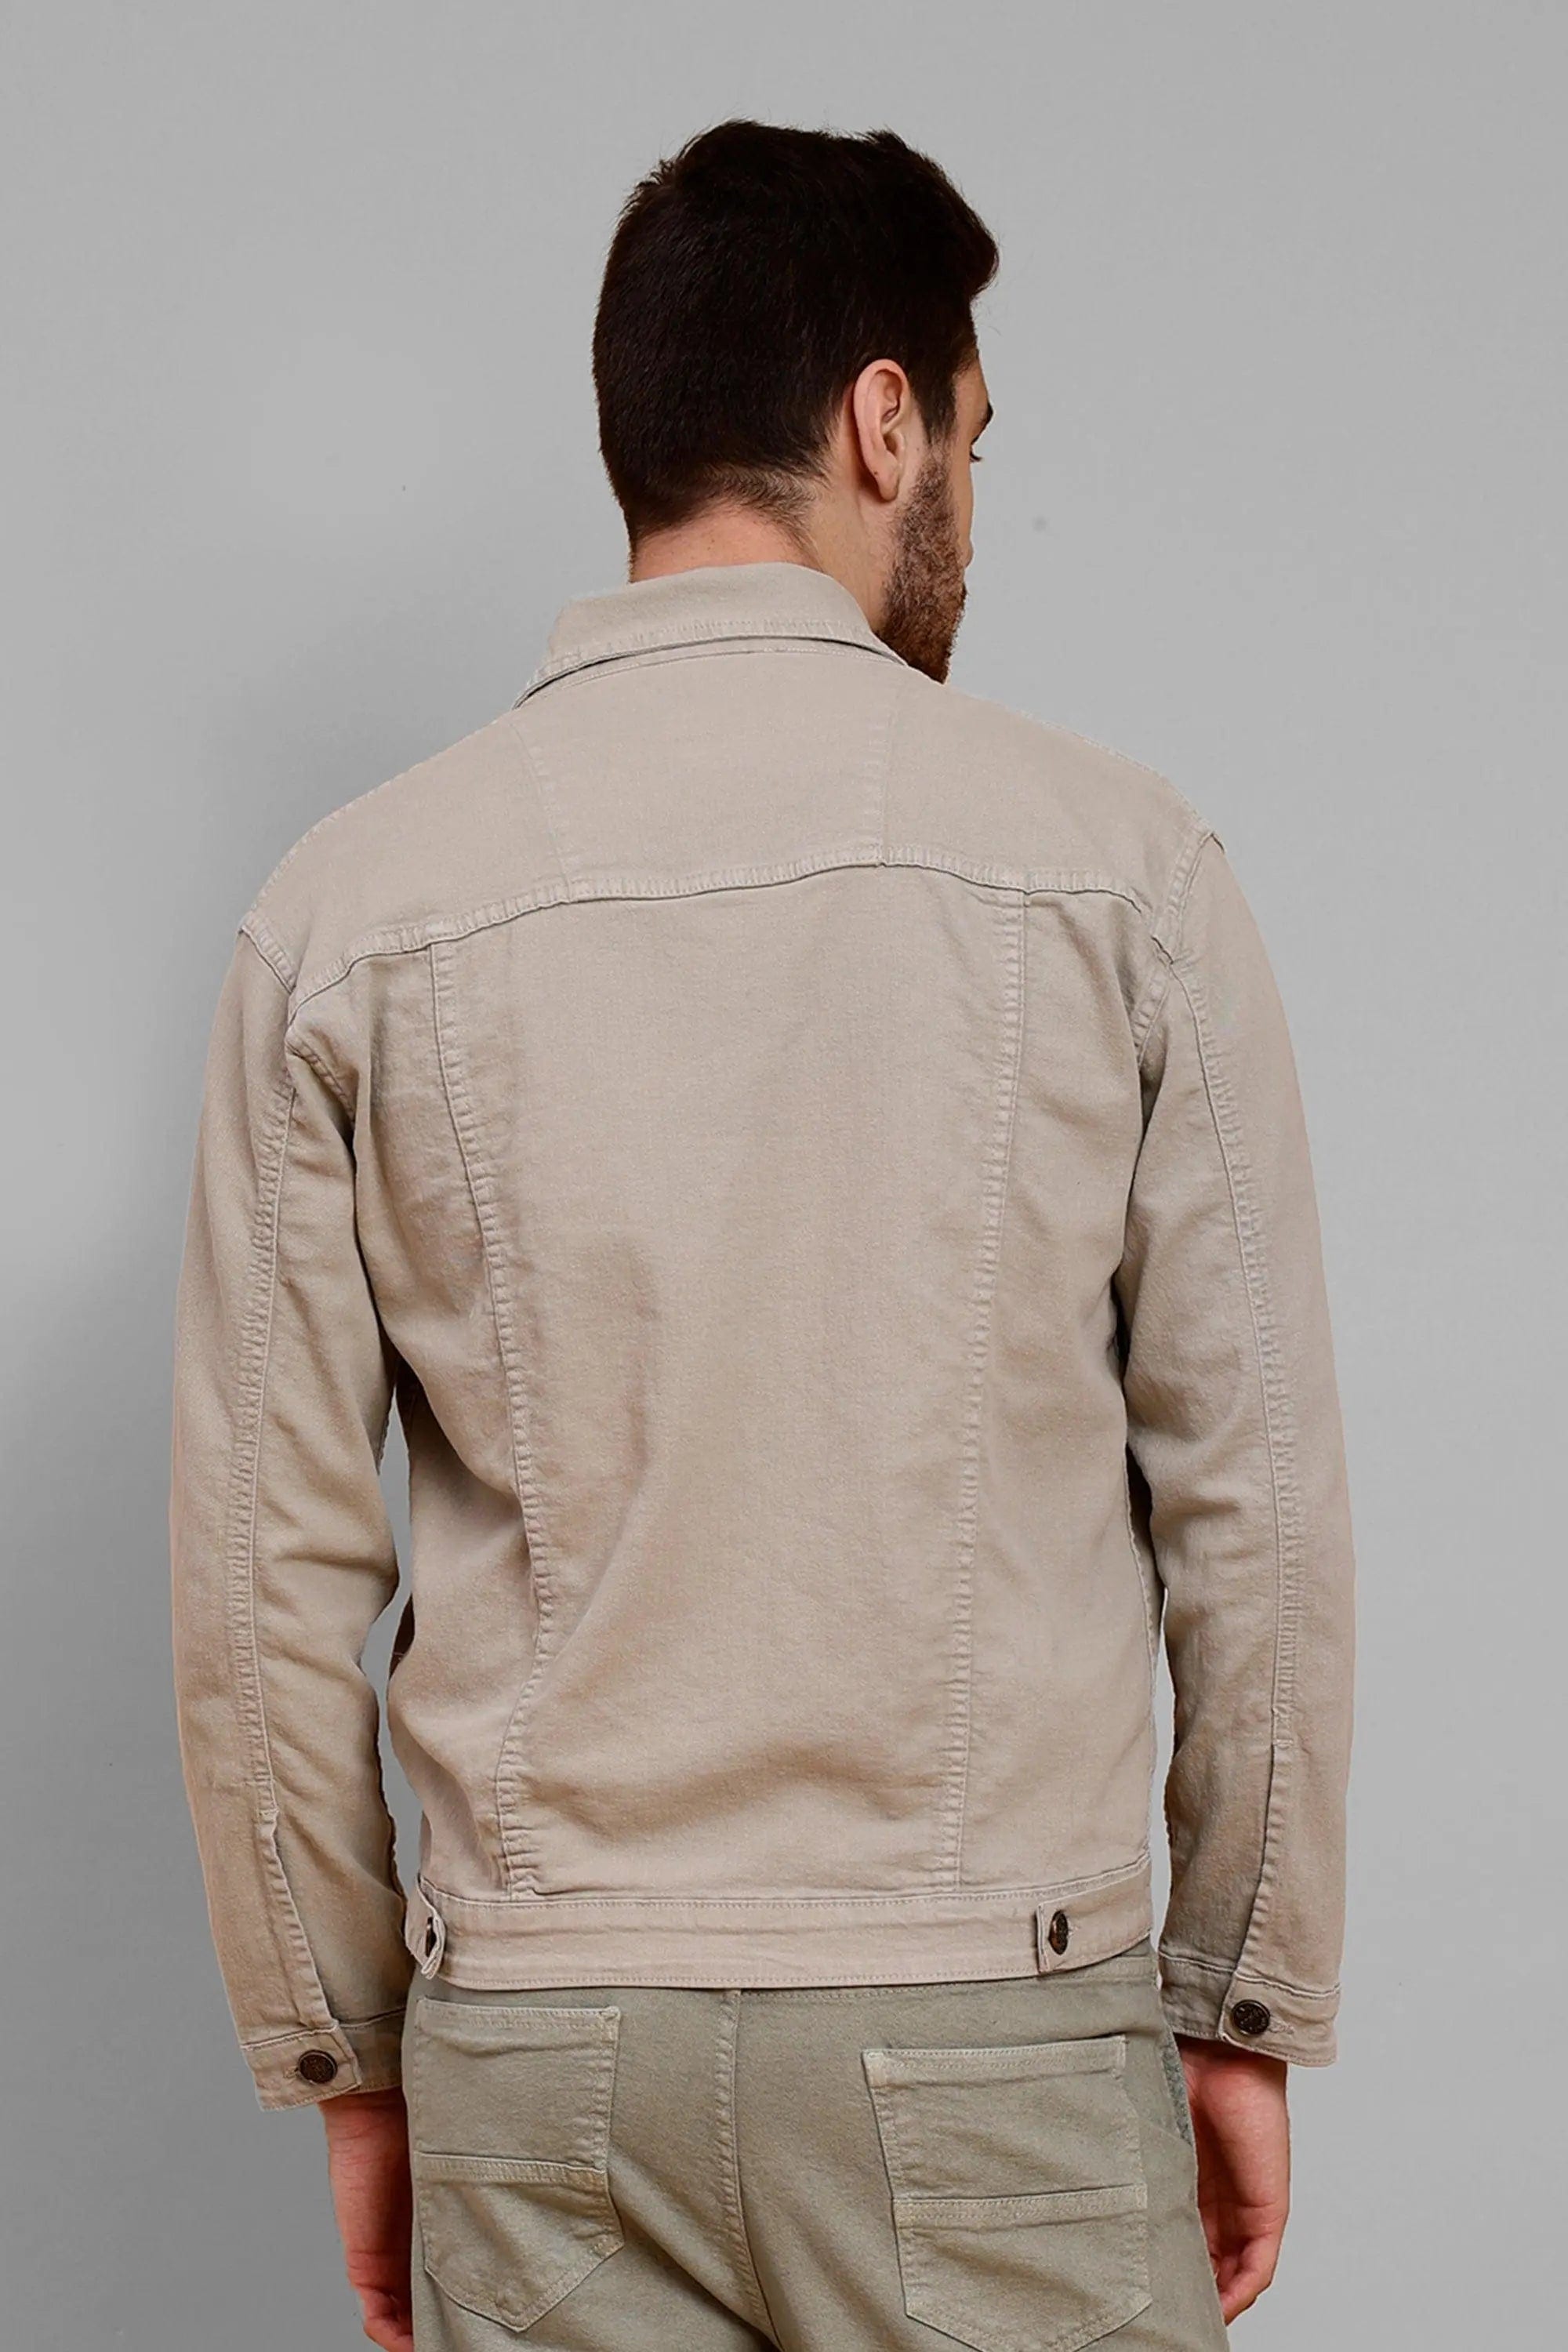 Jacket For Men: फैशनेबल और ट्रेंडी हैं ये Denim Jackets, पहनकर पाएं  कंफर्टेबल स्टाइल